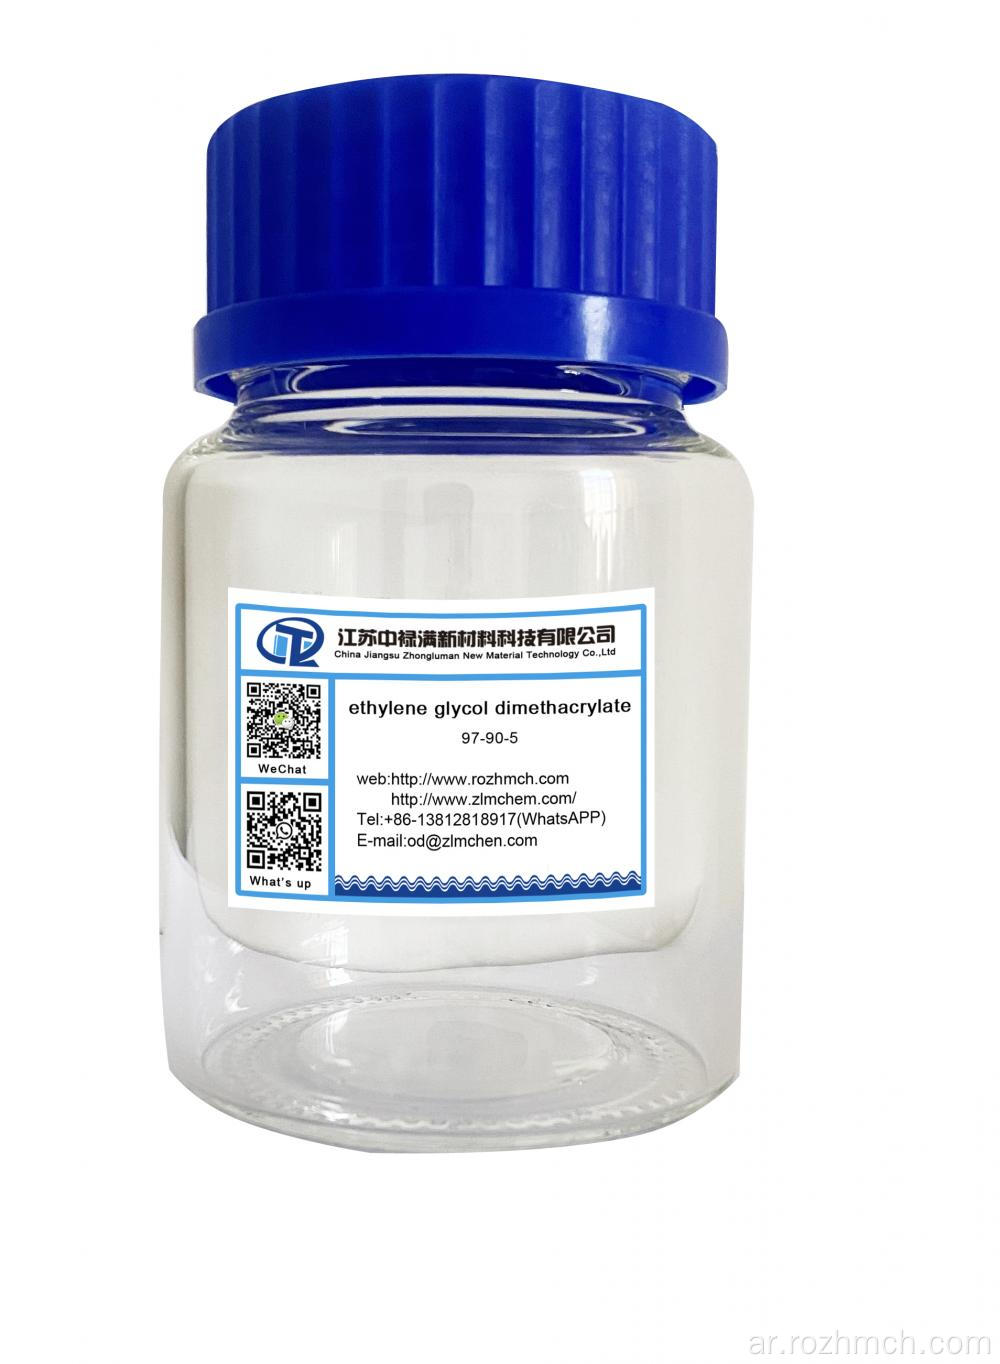 الإيثيلين جليكول ديميثاكريلات CAS رقم 97-90-5